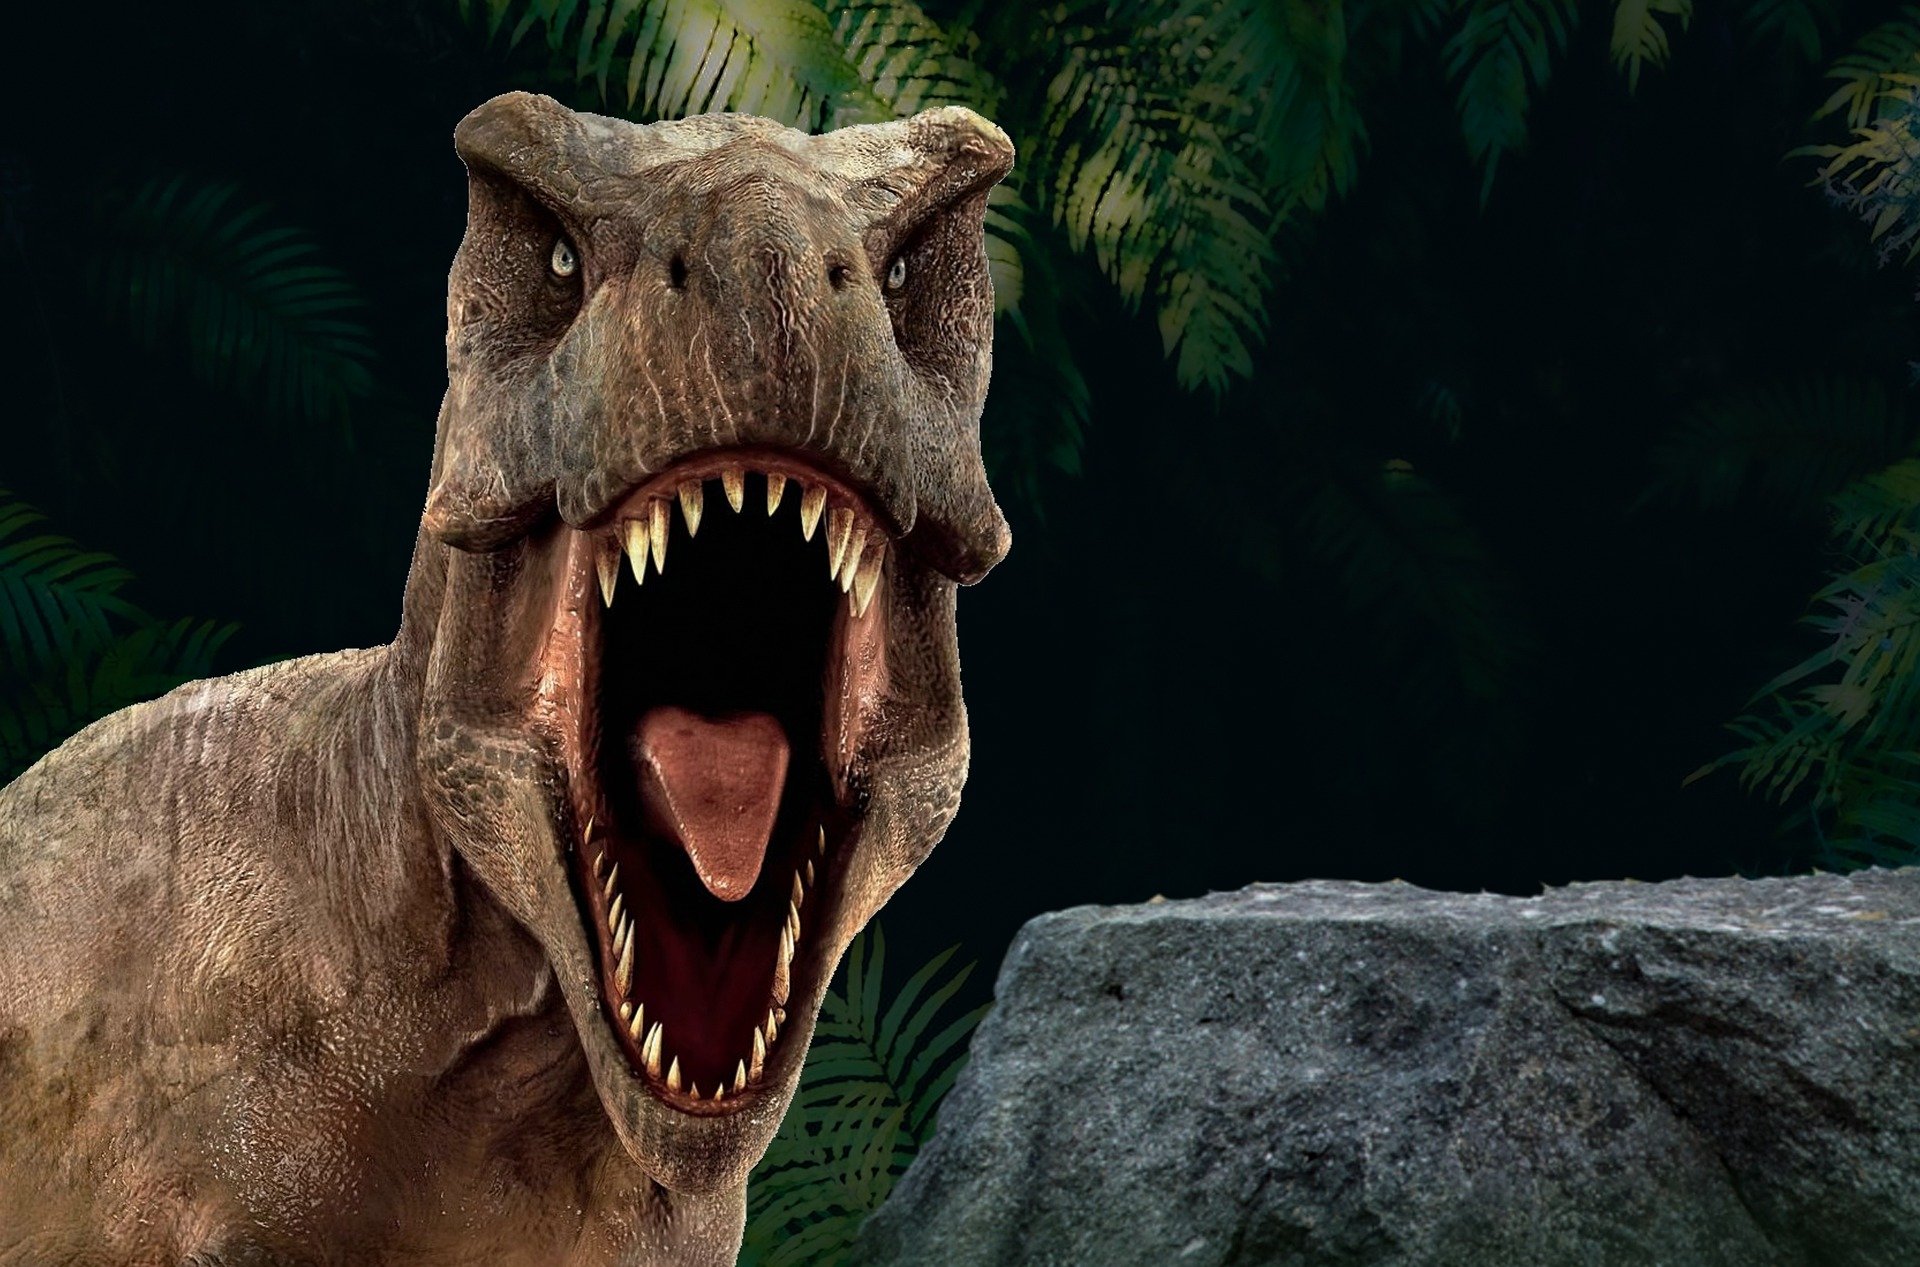 Динозавры бродили по Аляске 100 миллионов лет назад, находят археологи